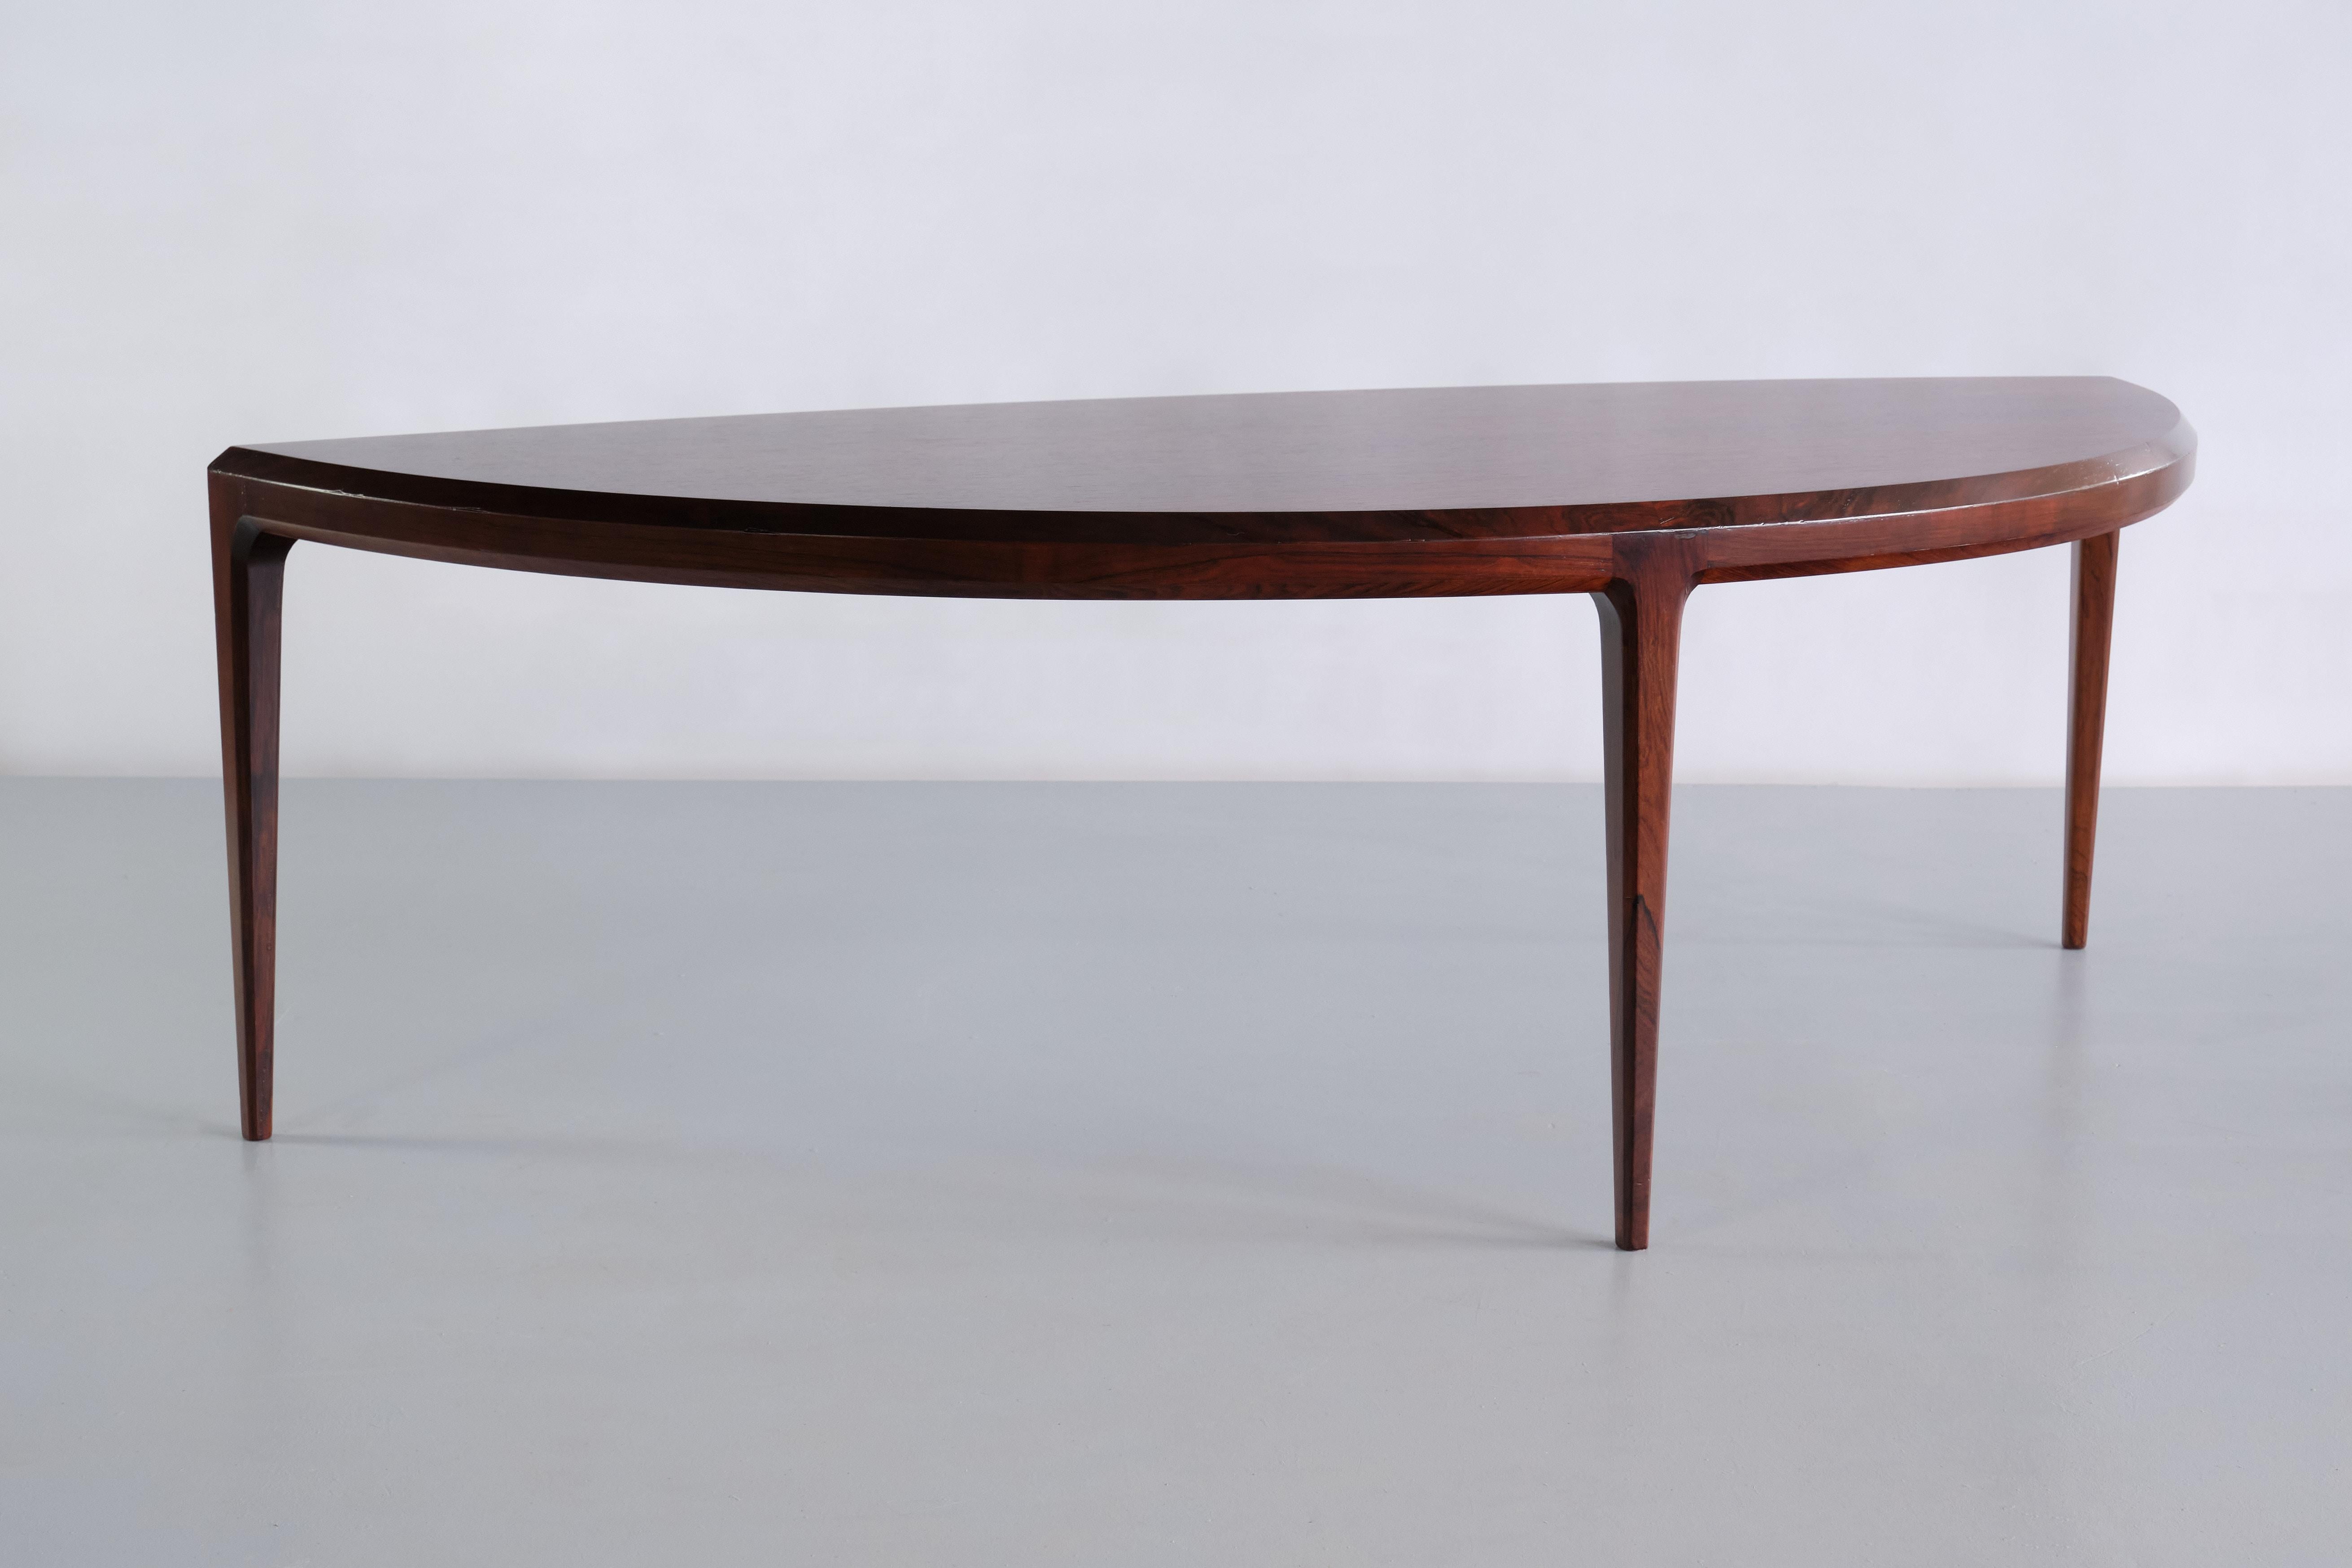 Cette table basse étonnante a été conçue par Johannes Andersen et fabriquée par CFC Silkeborg au Danemark au début des années 1960. Le plateau organique en forme de demilune et les trois pieds minces et effilés en font un design très élégant et